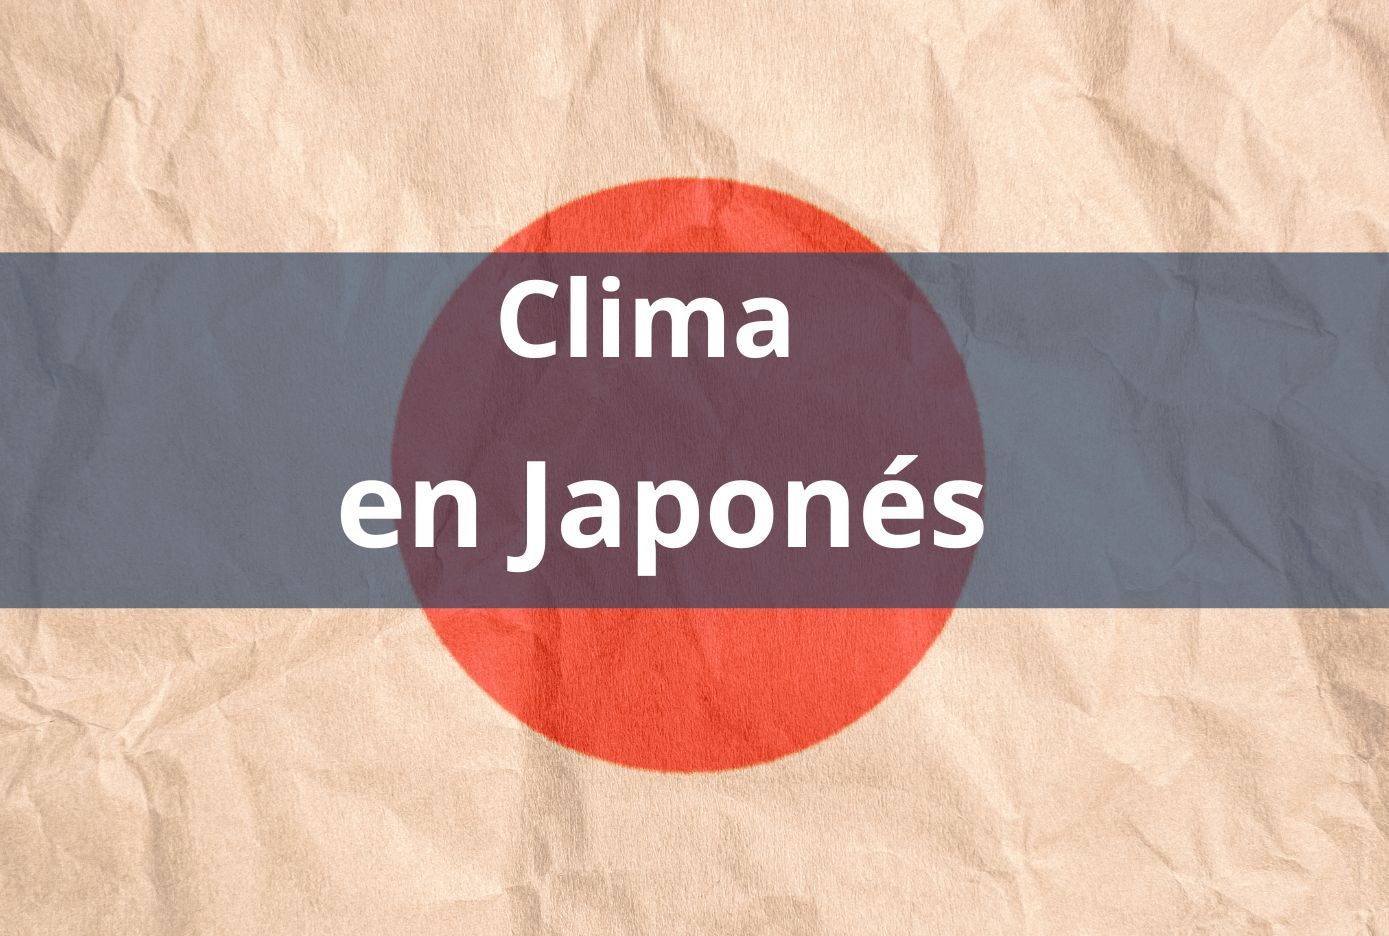 como se dice clima en japones